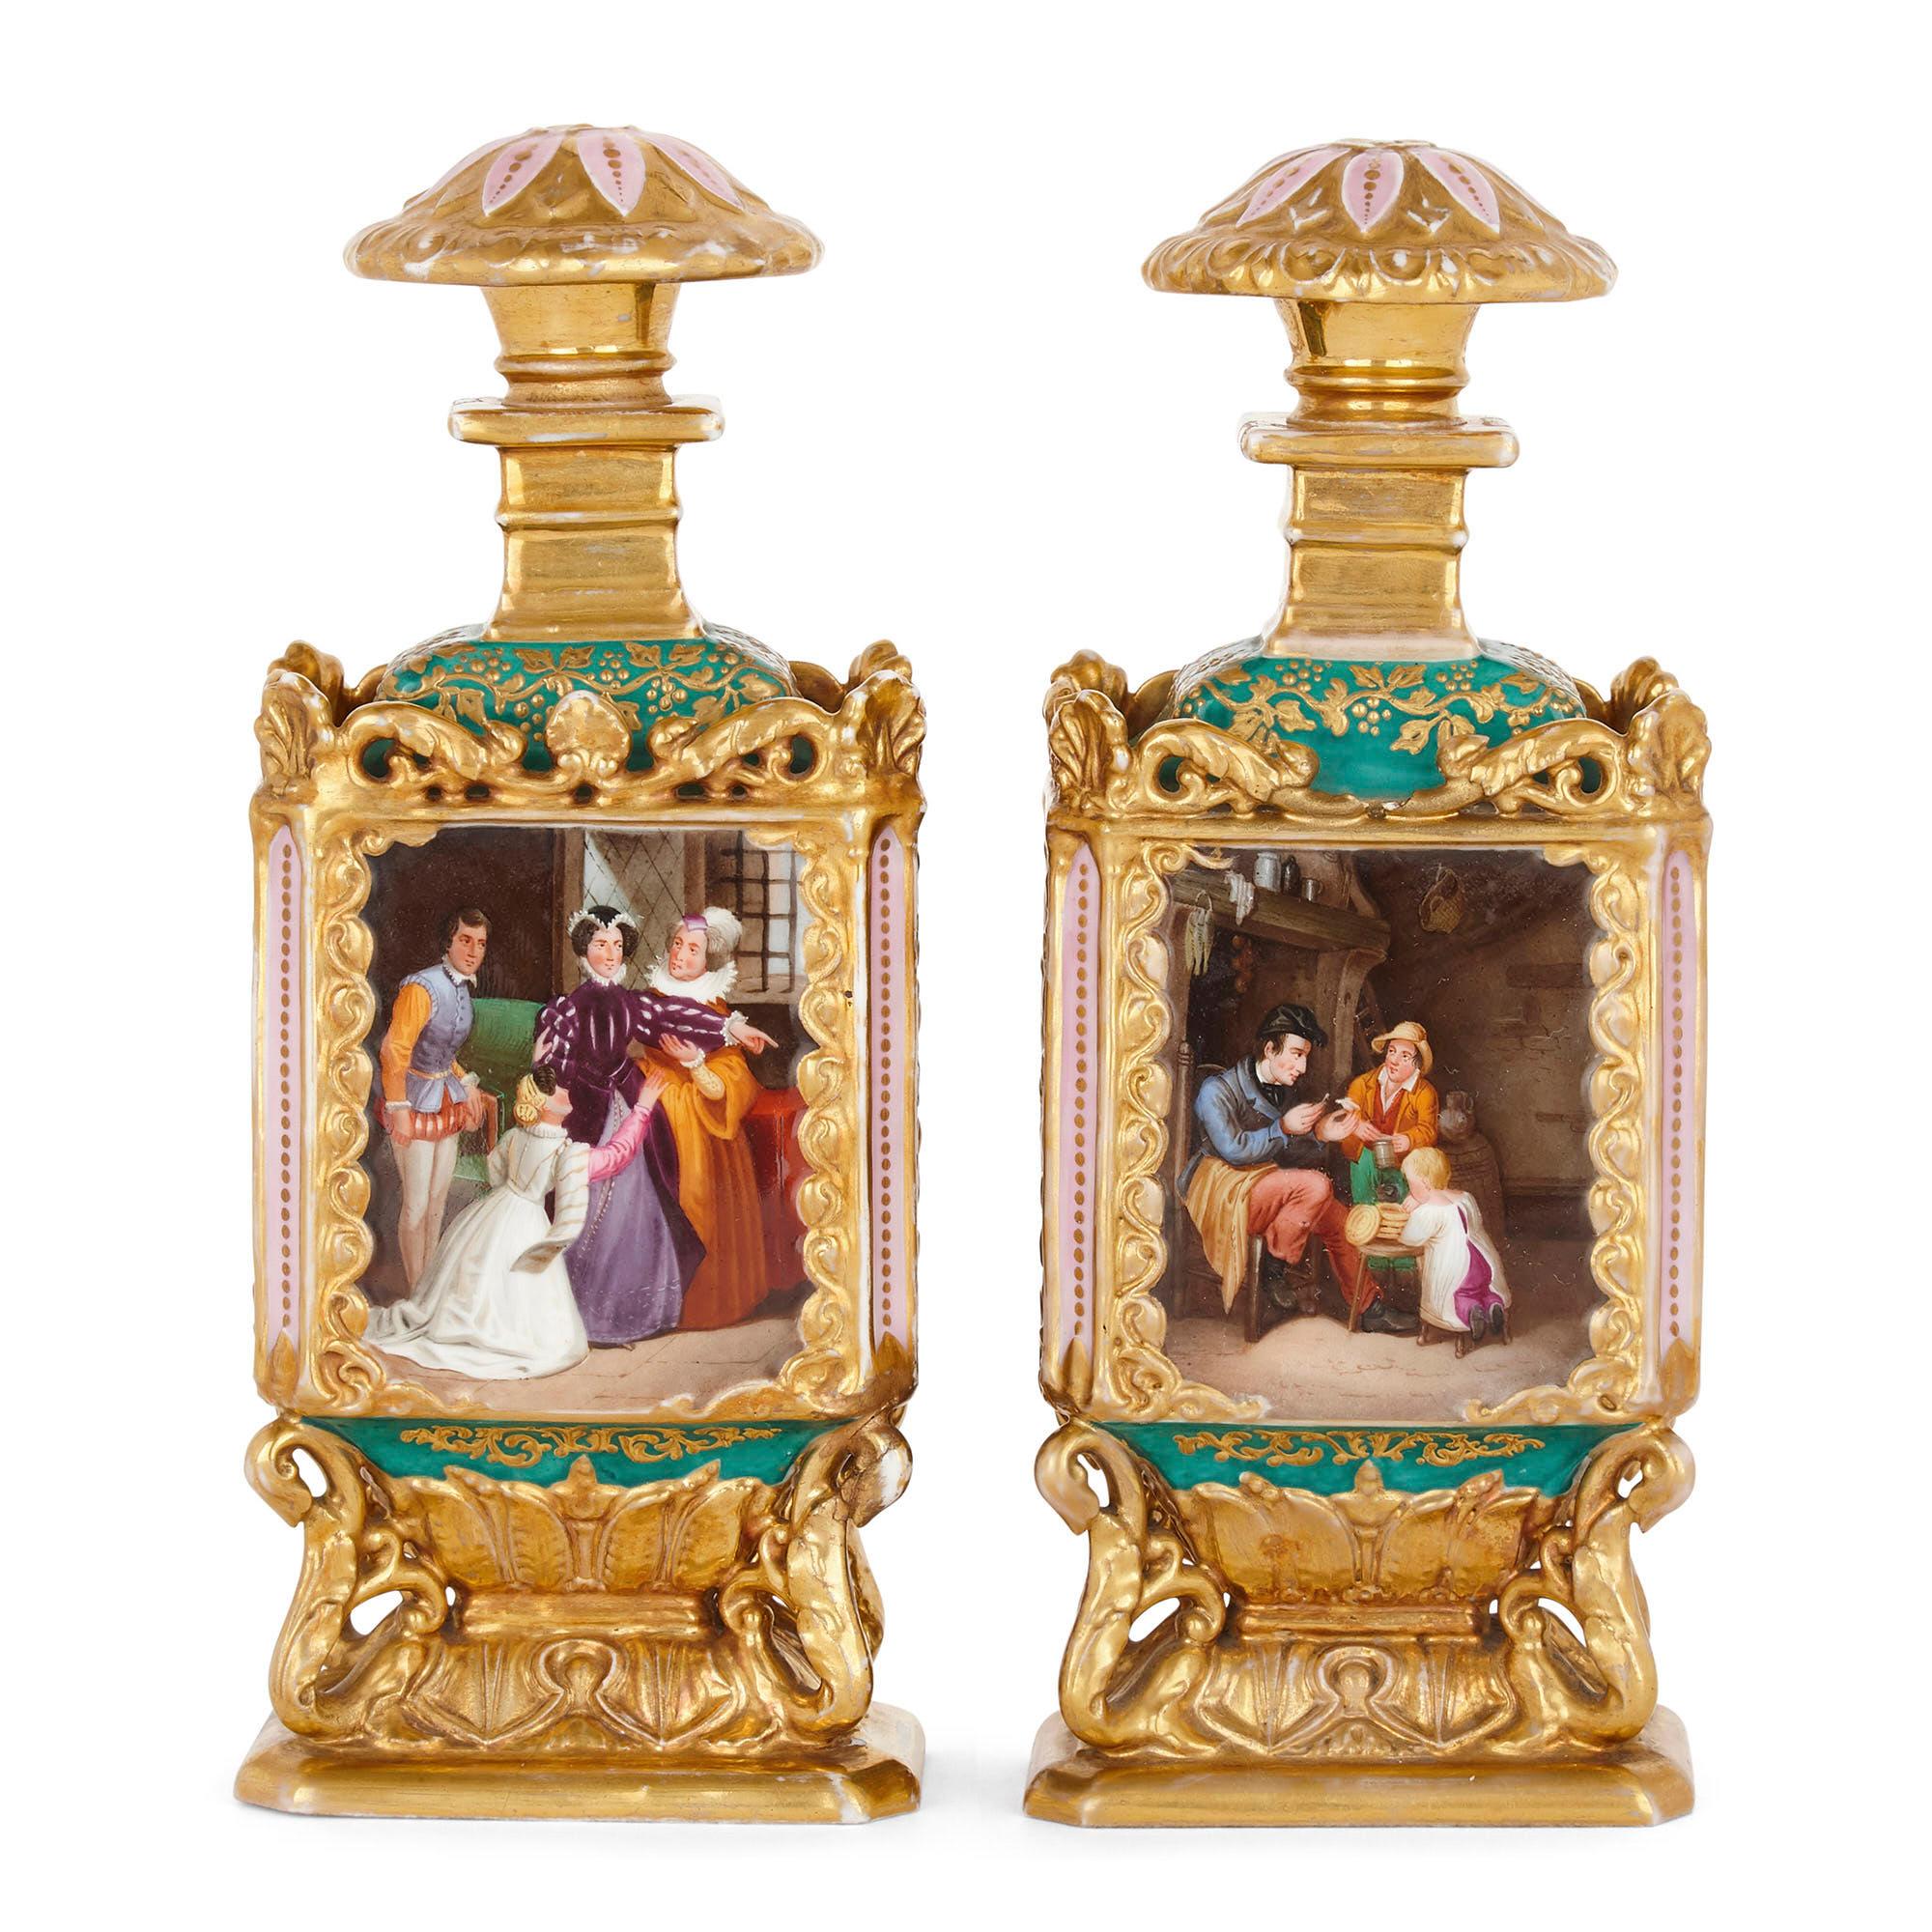 Paar vergoldete Porzellanflaschen im Rokokostil, wahrscheinlich von Jacob Petit
Französisch, 19. Jahrhundert
Maße: Höhe 22,5cm, Breite 9cm, Tiefe 6cm

Dieses Flaschenpaar, das Jacob Petit zugeschrieben wird, ist aus feinem Porzellan gefertigt.